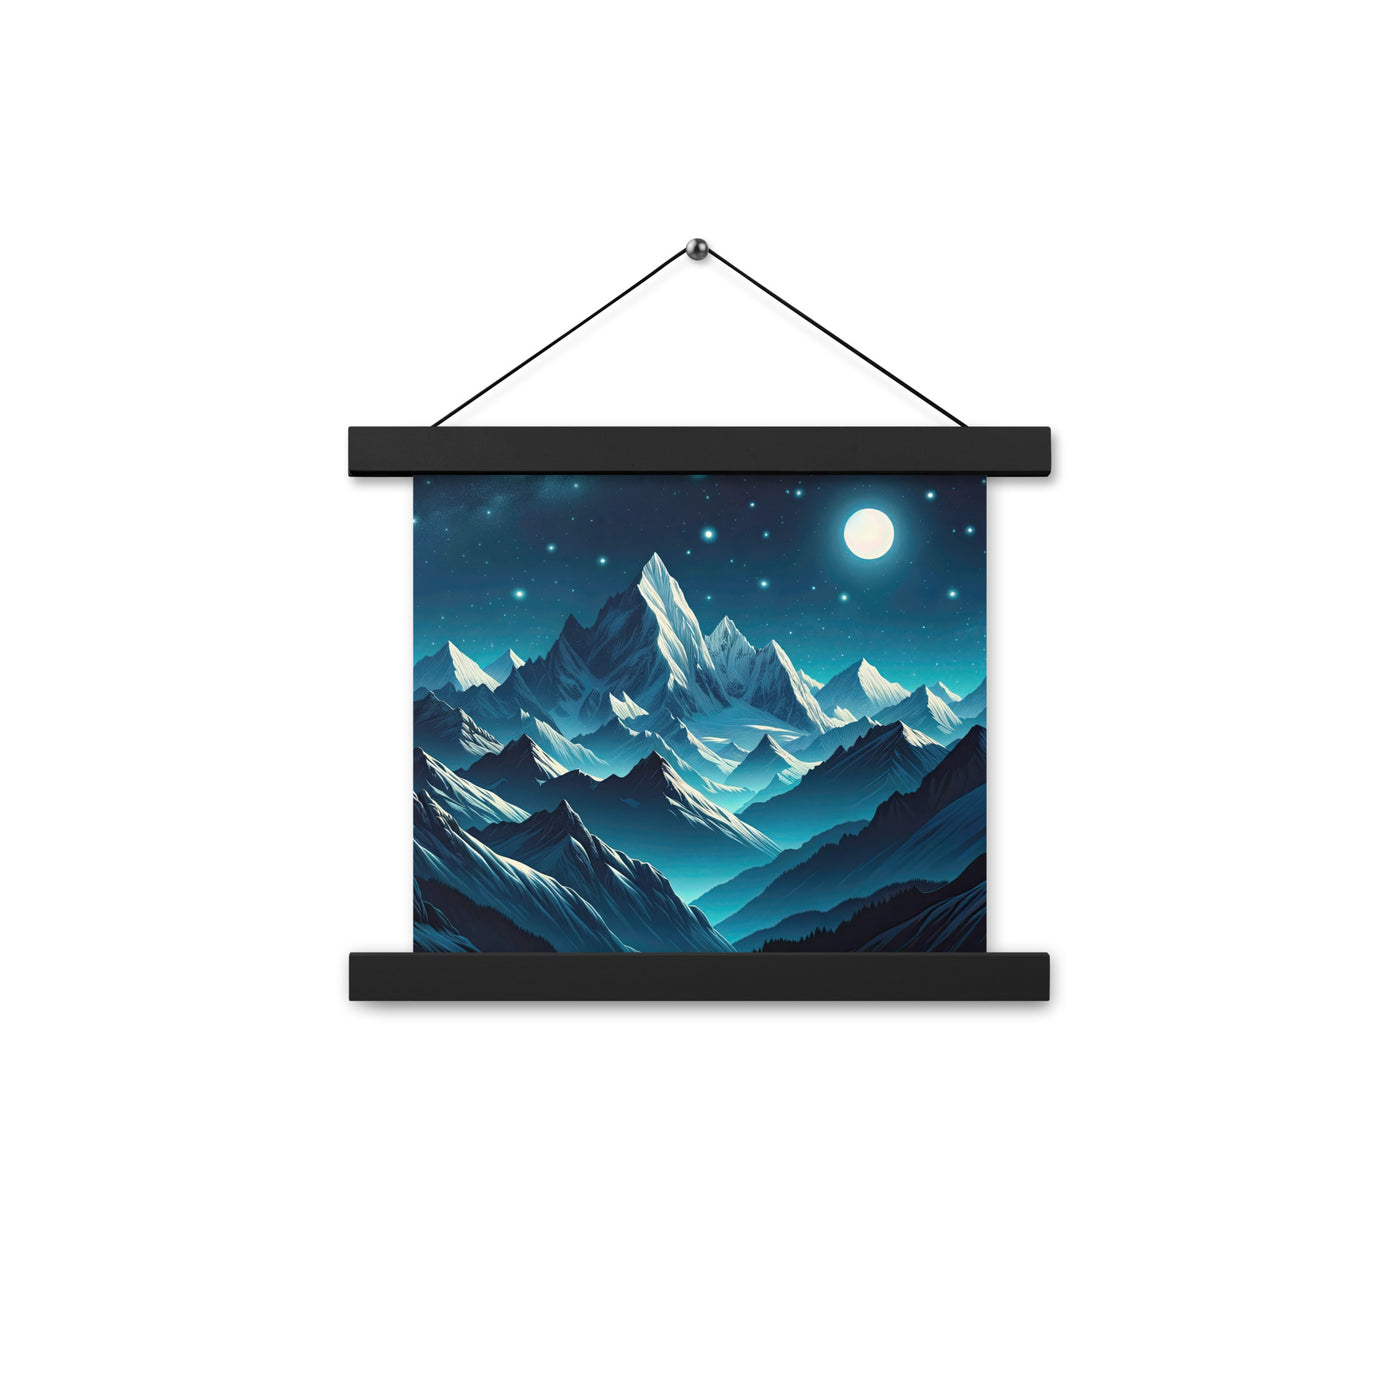 Sternenklare Nacht über den Alpen, Vollmondschein auf Schneegipfeln - Premium Poster mit Aufhängung berge xxx yyy zzz 25.4 x 25.4 cm